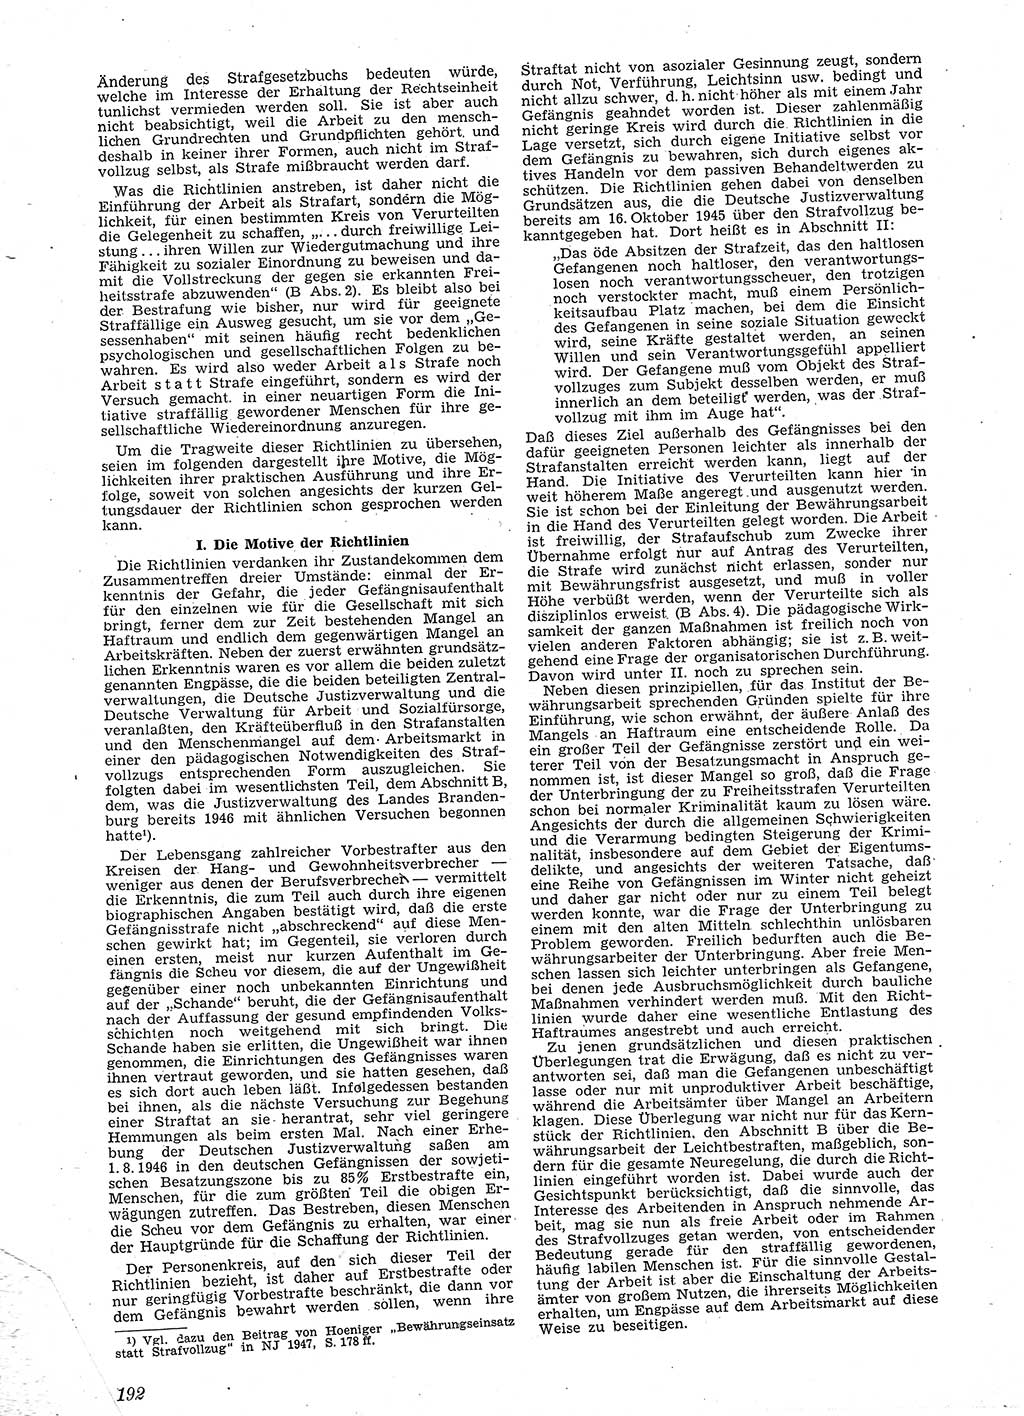 Neue Justiz (NJ), Zeitschrift für Recht und Rechtswissenschaft [Sowjetische Besatzungszone (SBZ) Deutschland], 2. Jahrgang 1948, Seite 192 (NJ SBZ Dtl. 1948, S. 192)